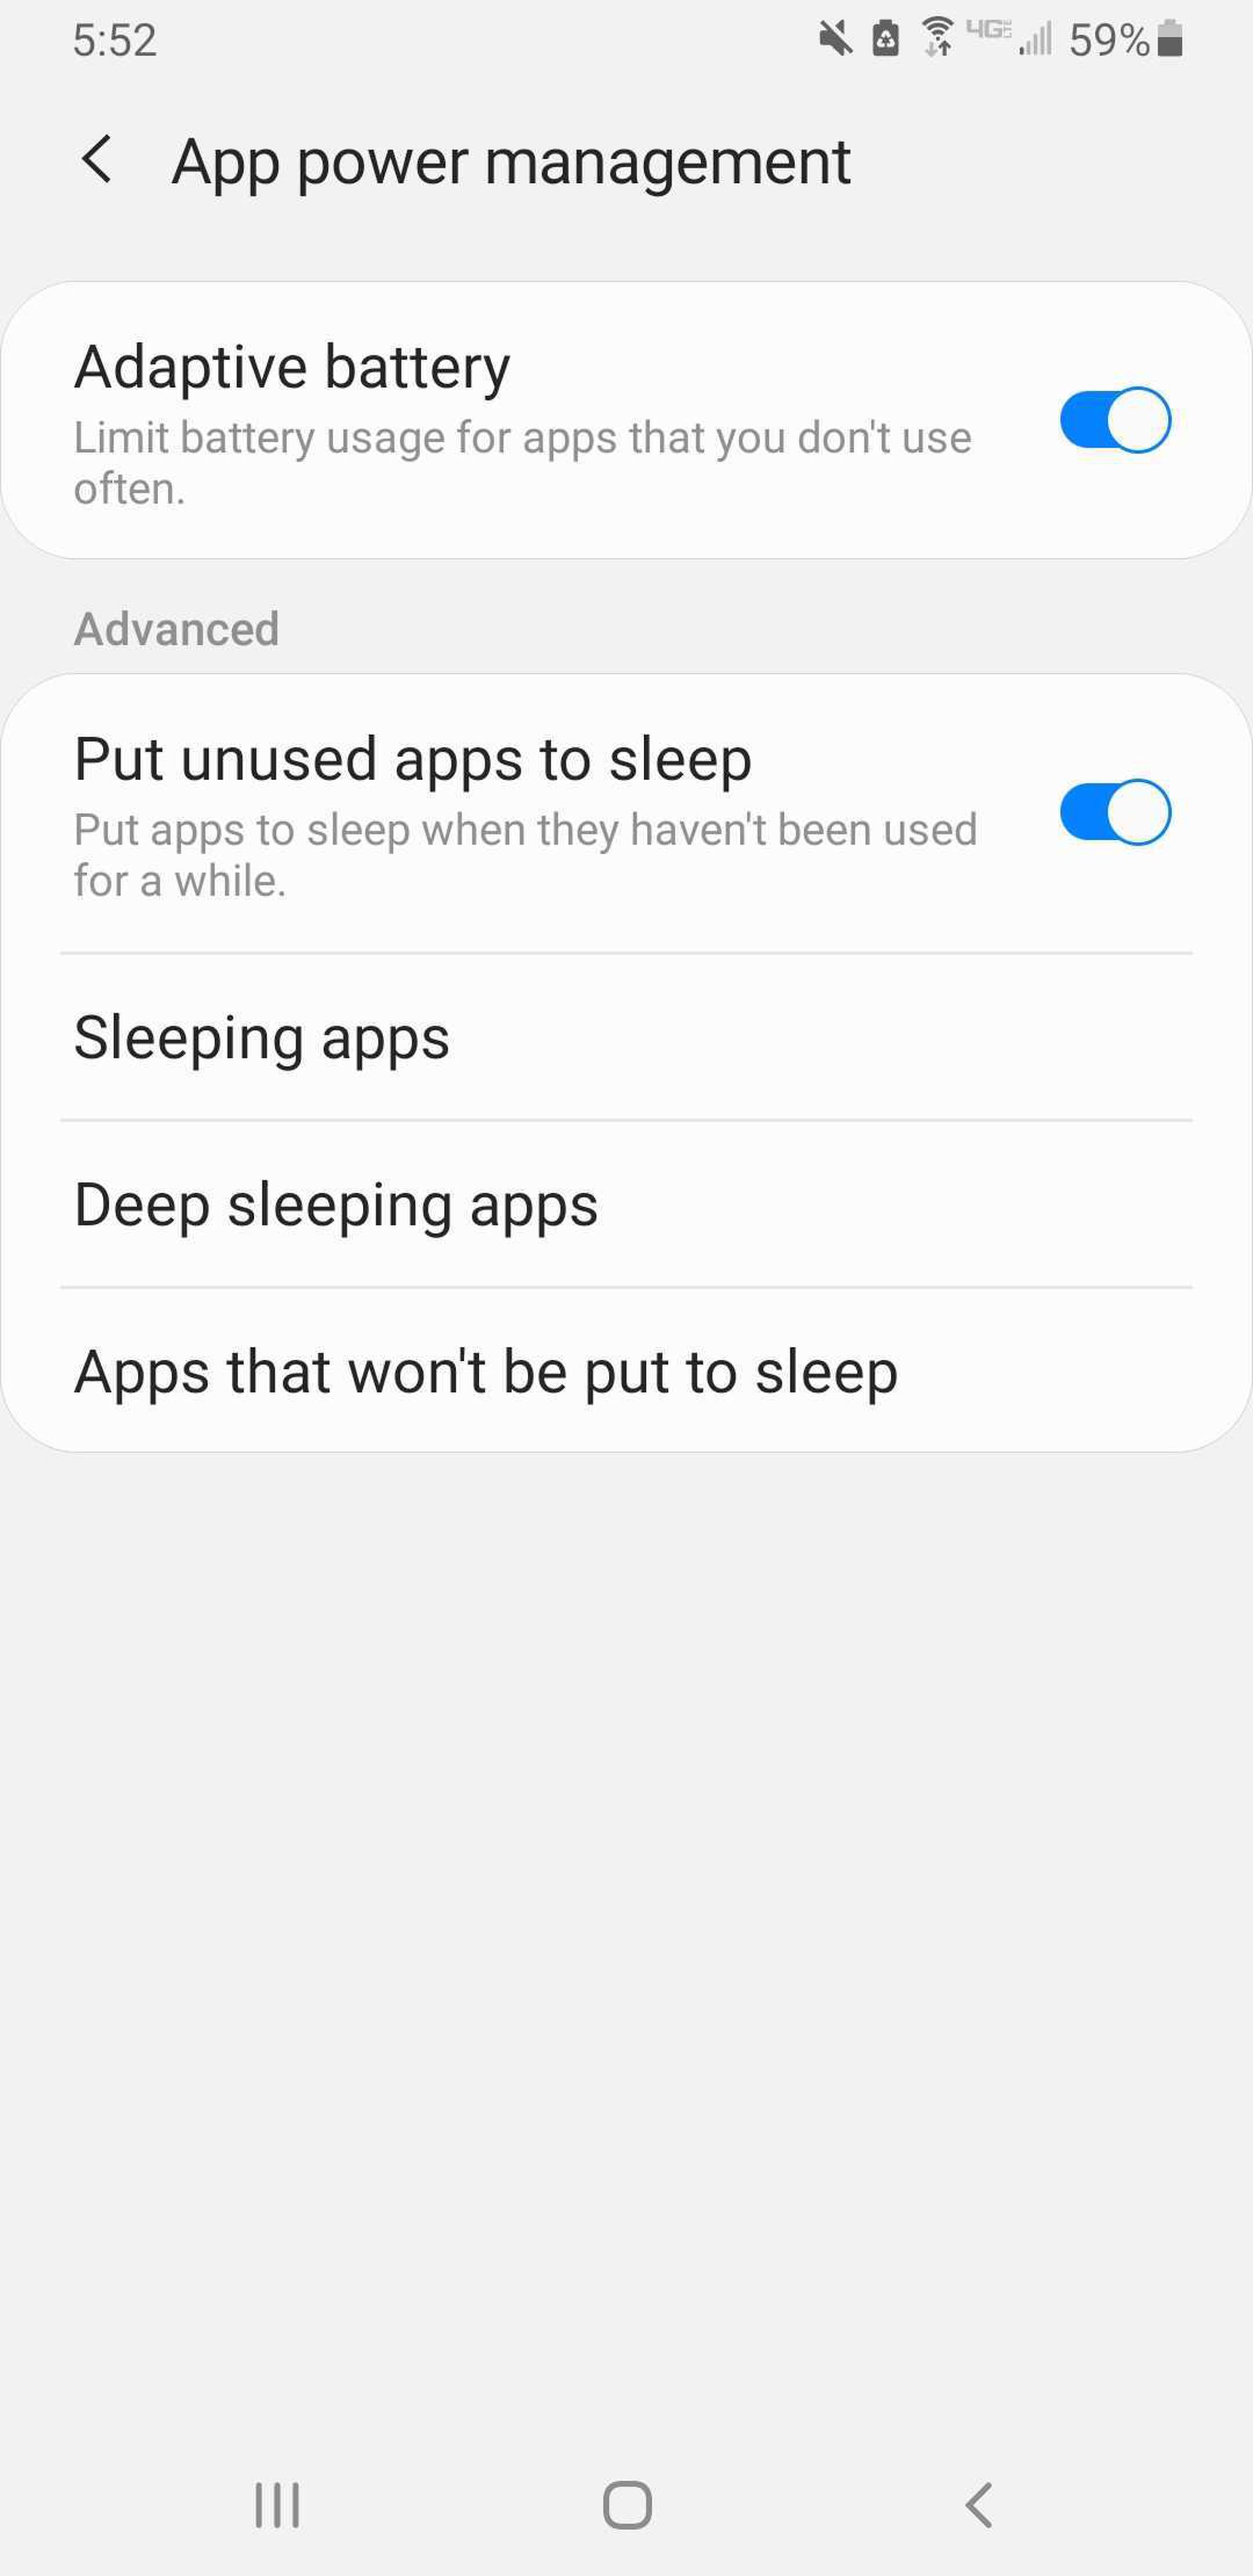 Toggle on “Put unused apps to sleep.”